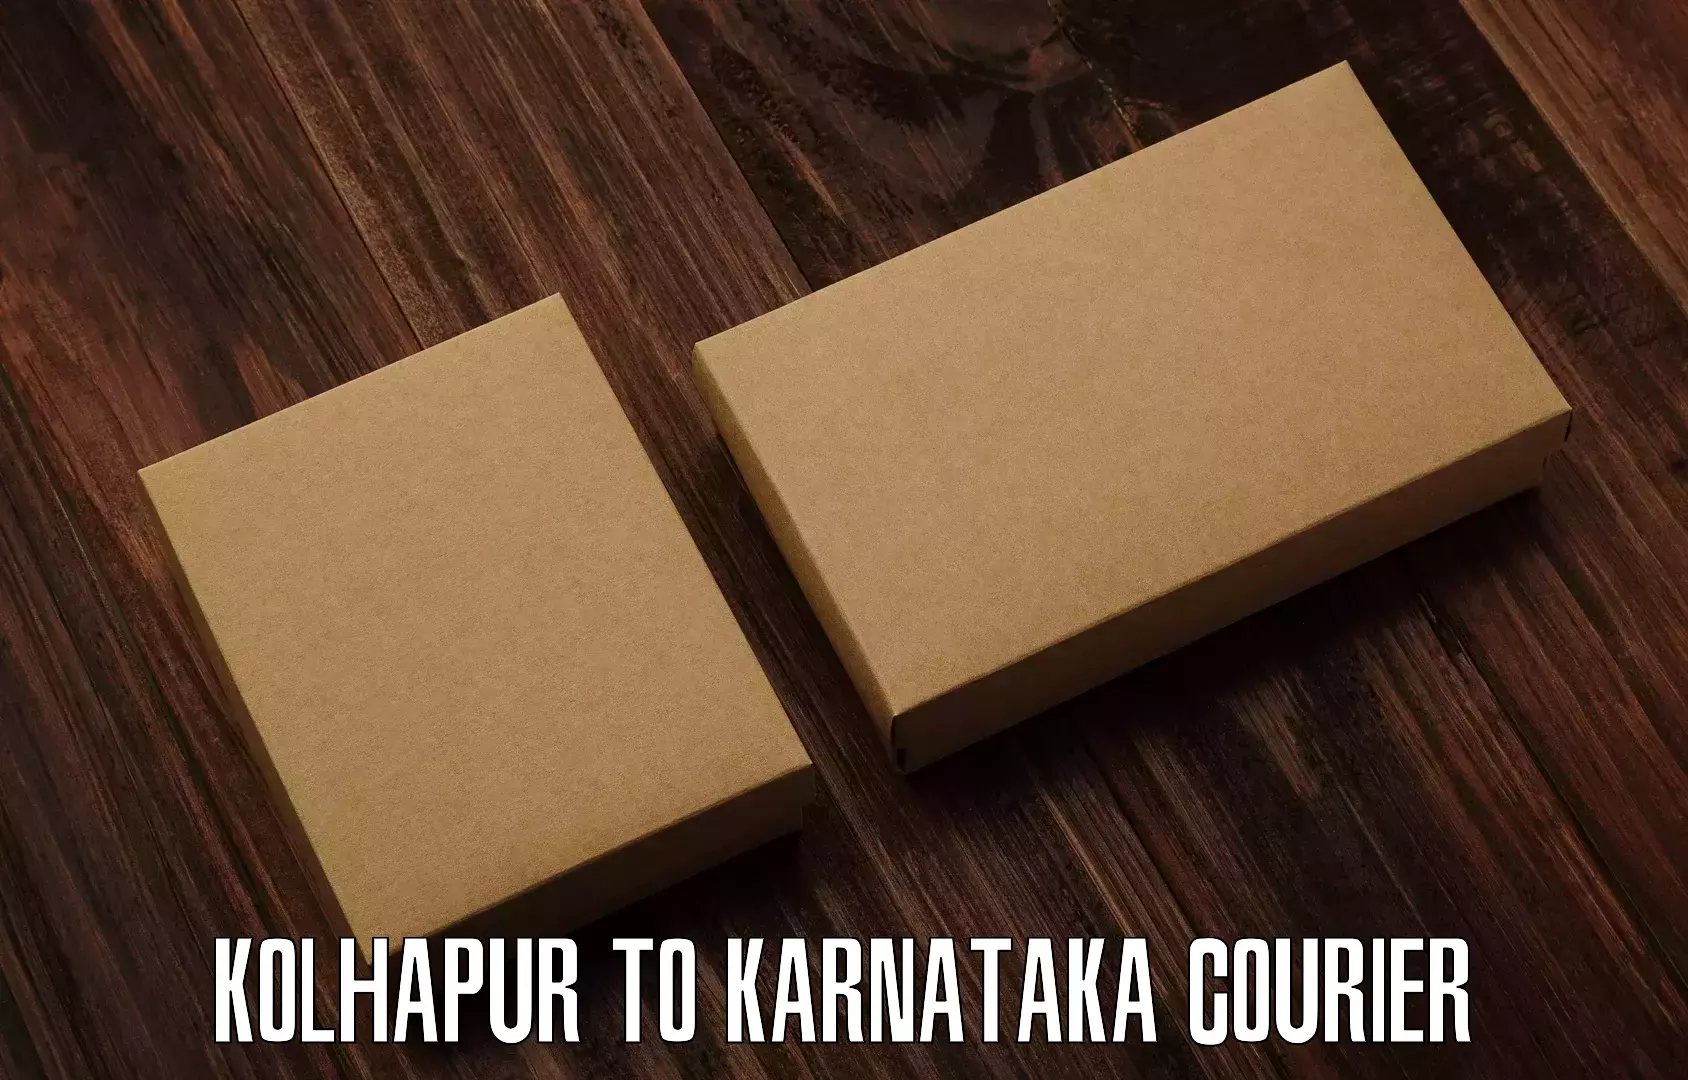 Efficient parcel service Kolhapur to Holalkere